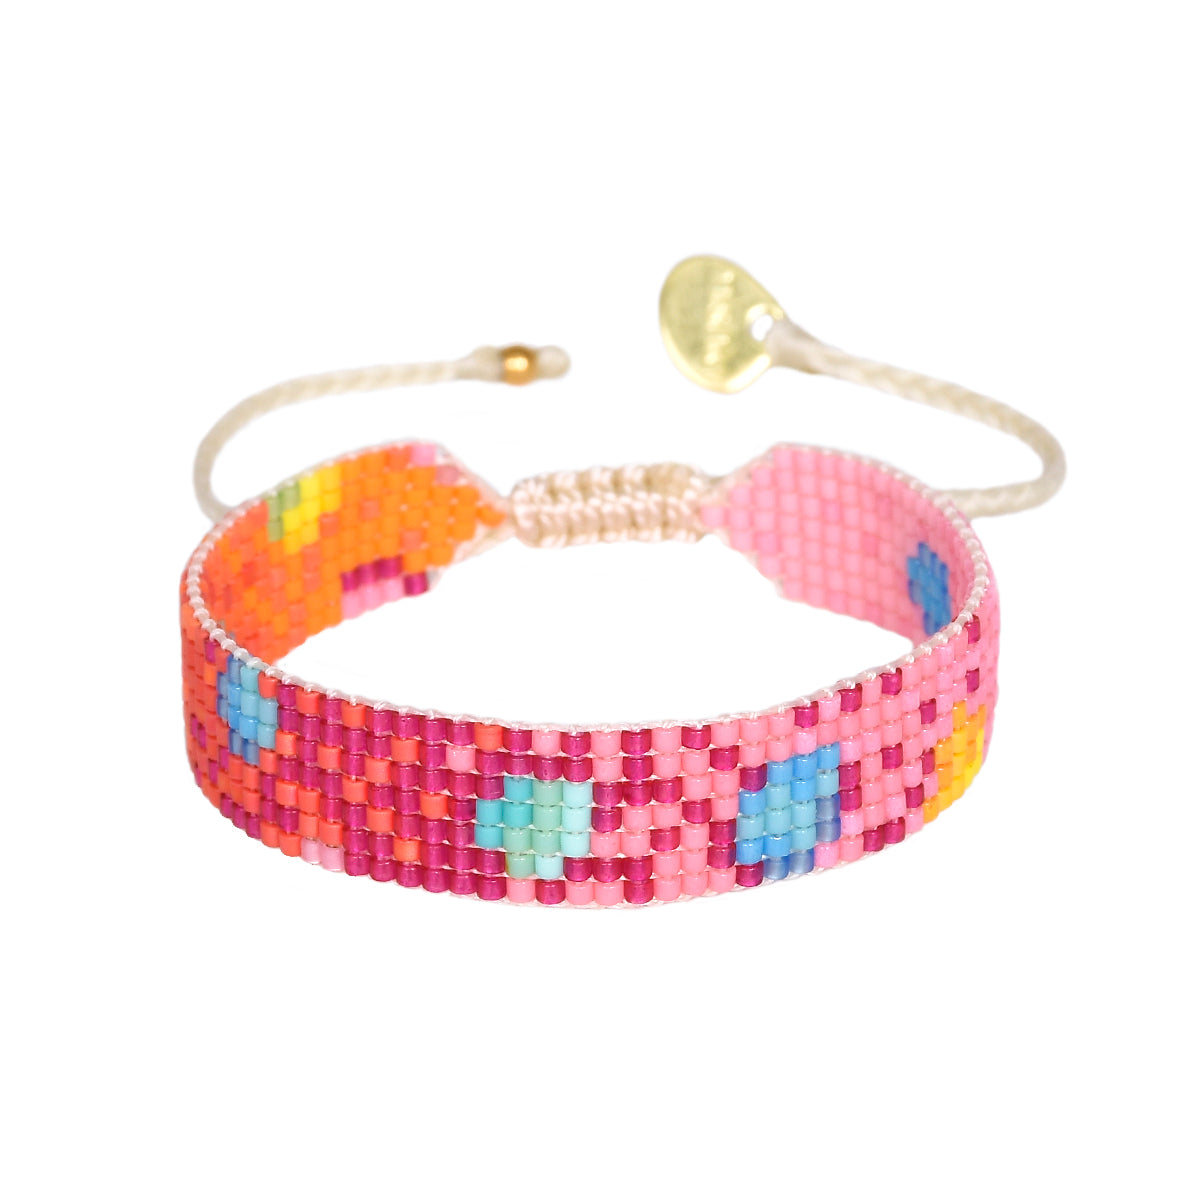 Coral Reef 2.0 adjustable bracelet 12130 S